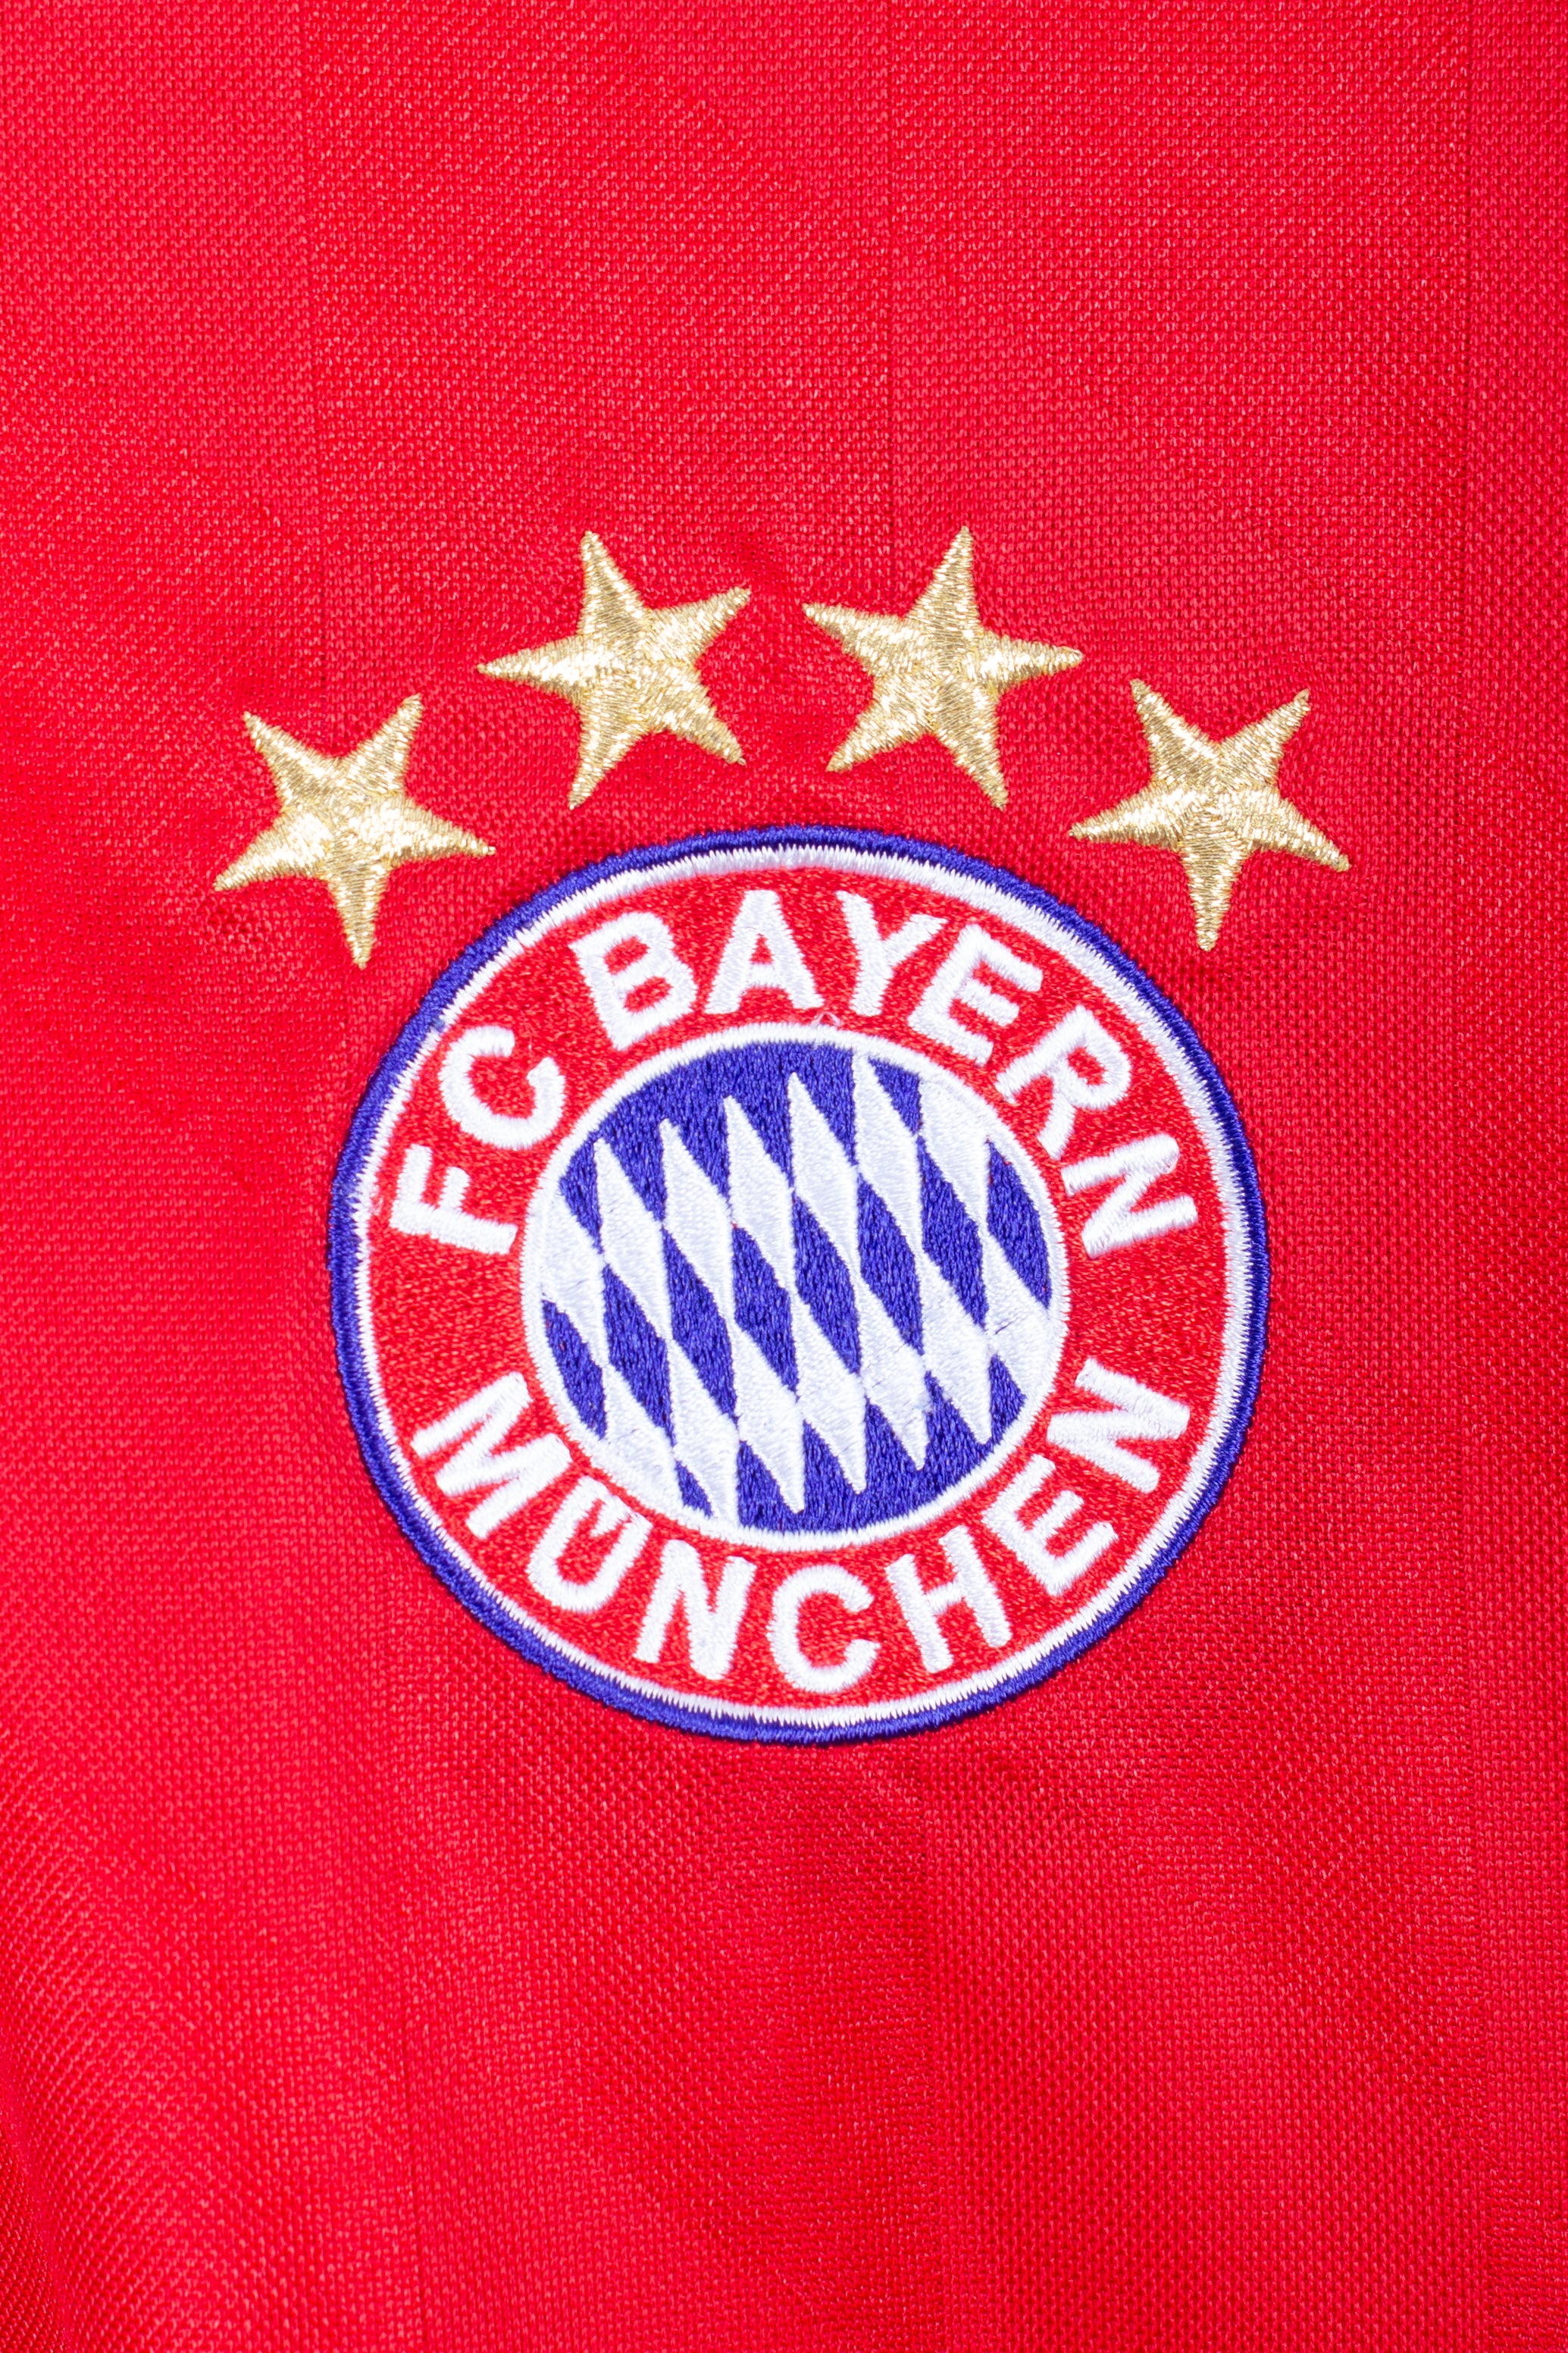 Bayern Munich 2013/14 Home Shirt (Lewandowski #9) (S)